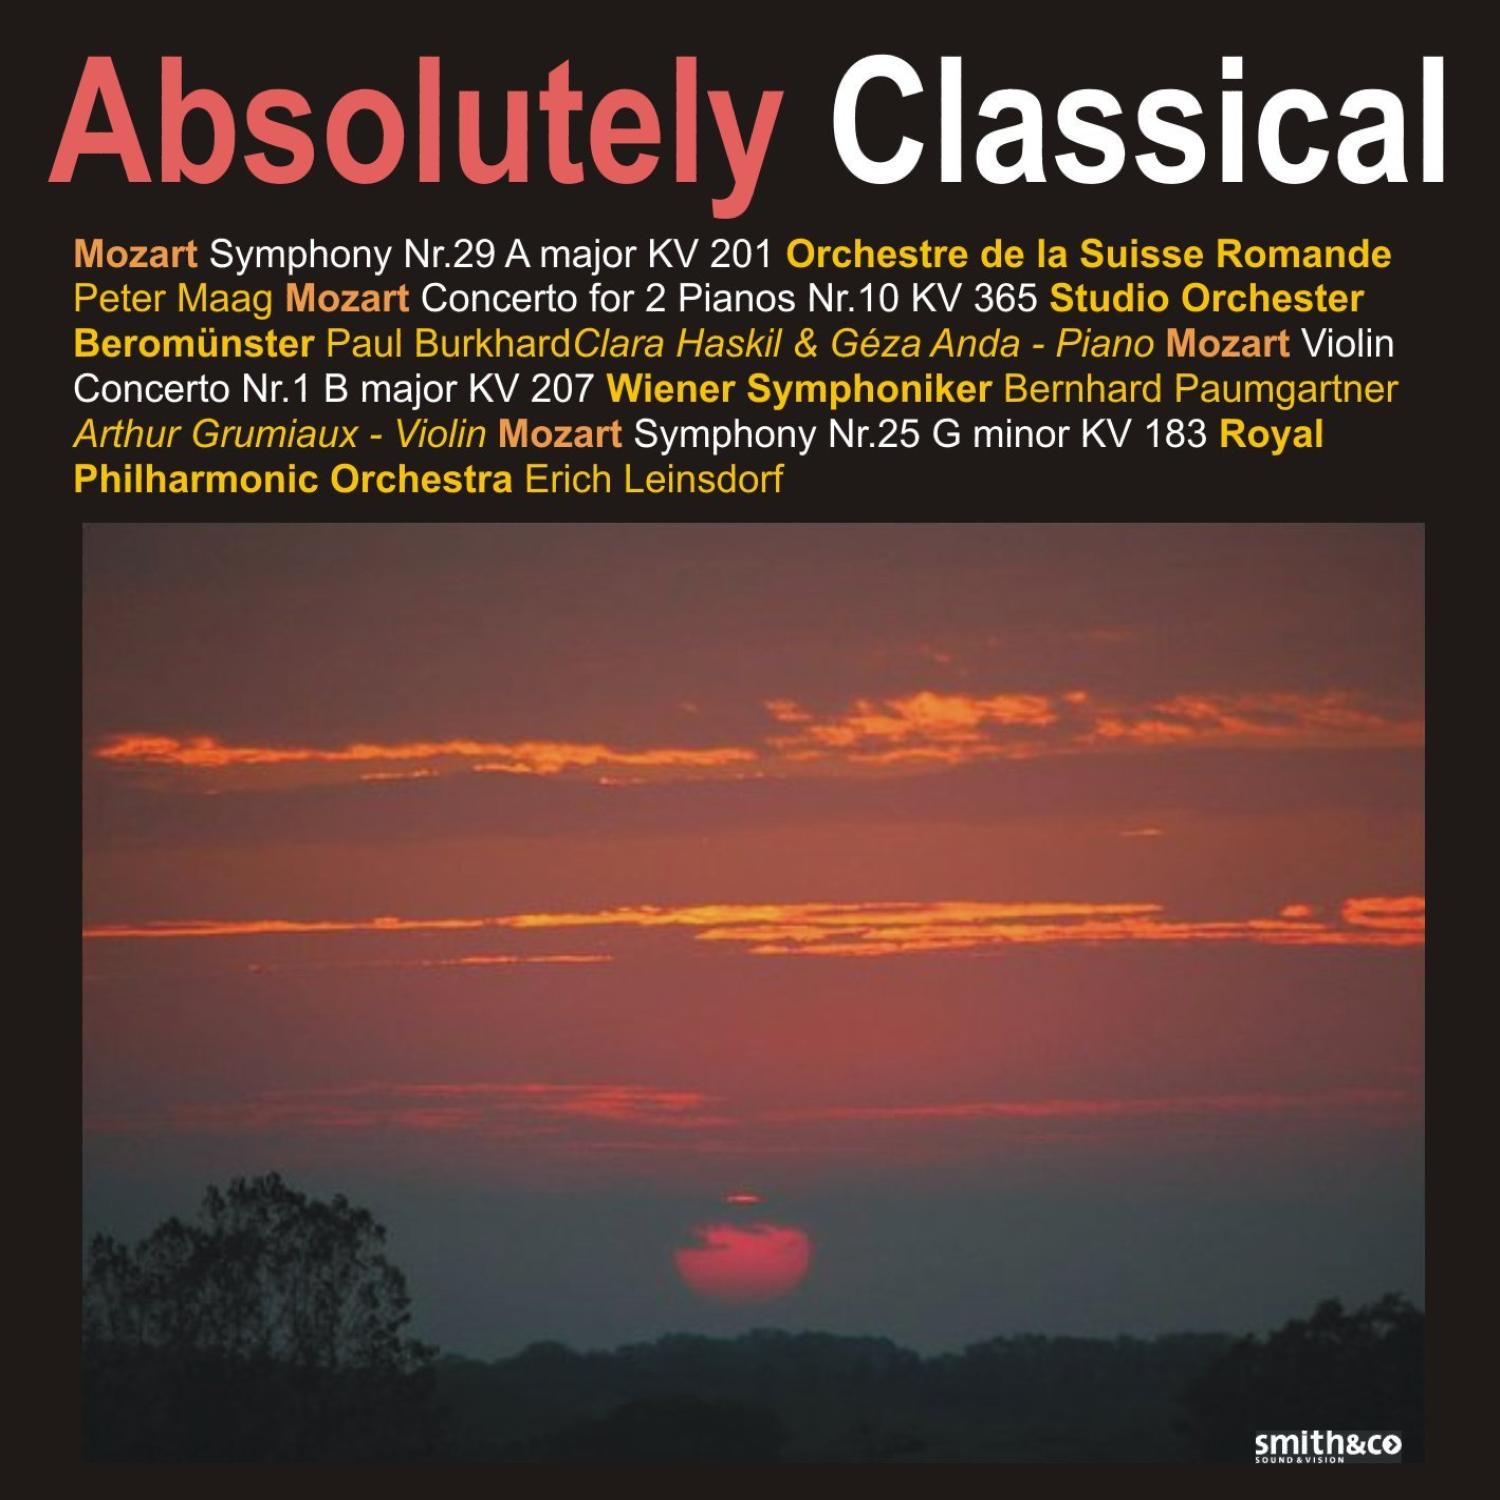 Symphony No. 29 in A Major, K. 201: III. Menuetto & Trio